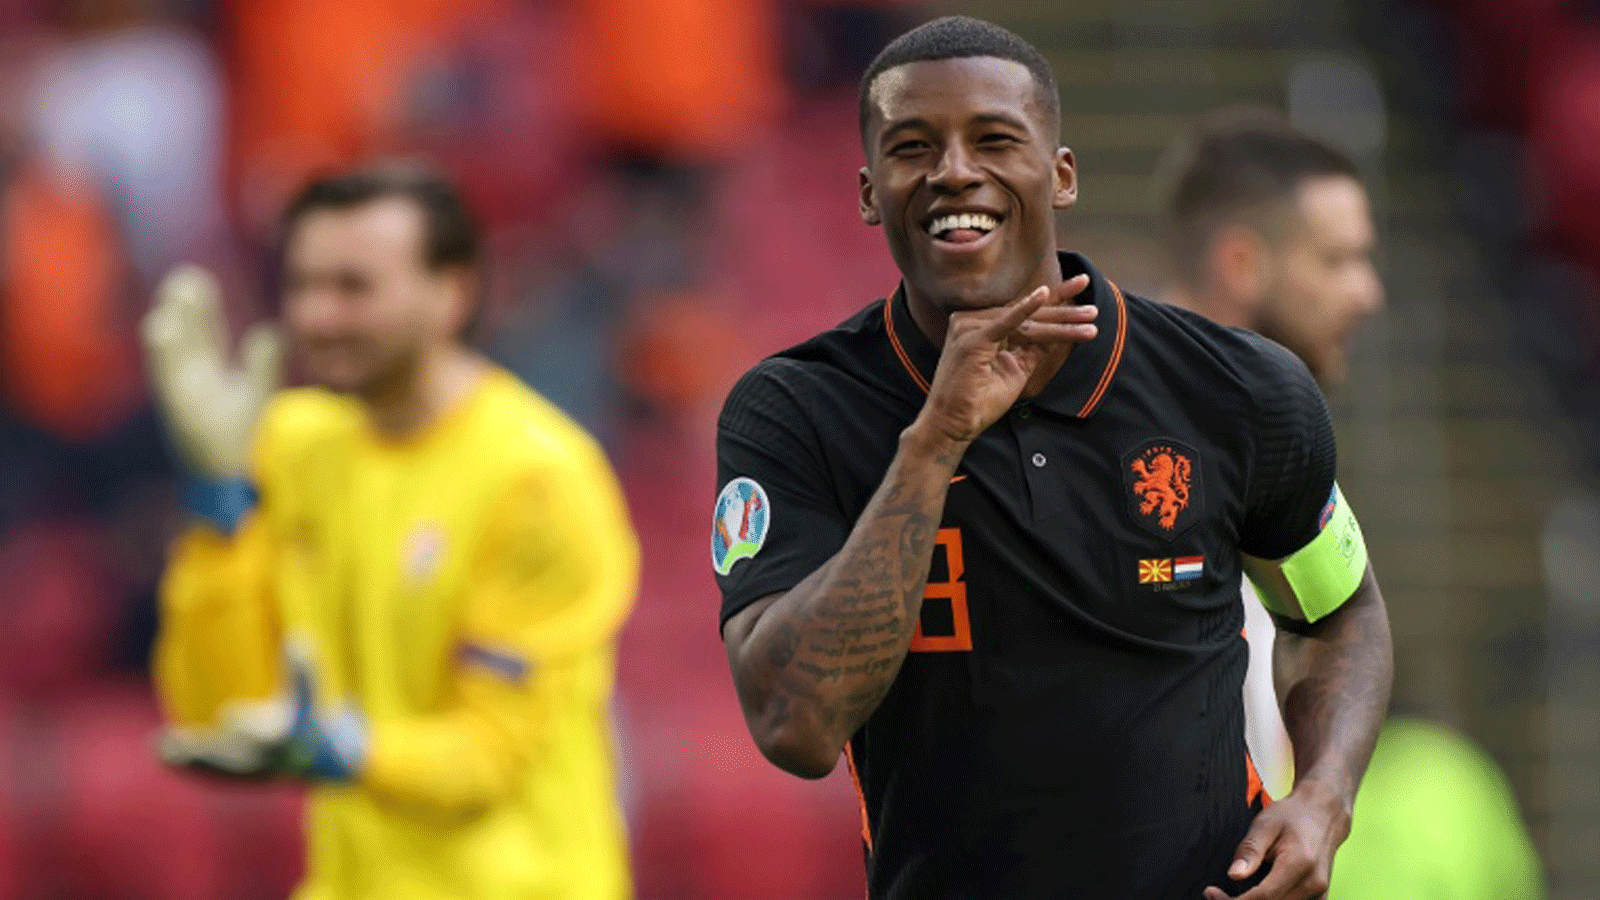 الهولندي جورجيو فينالدوم يحتفل بتسجيل هدف في مرمى مقدونيا الشمالية خلال دور المجموعات في بطولة كأس أوروبا 2020 في 21 حزيران/يونيو 2021 في أمستردام